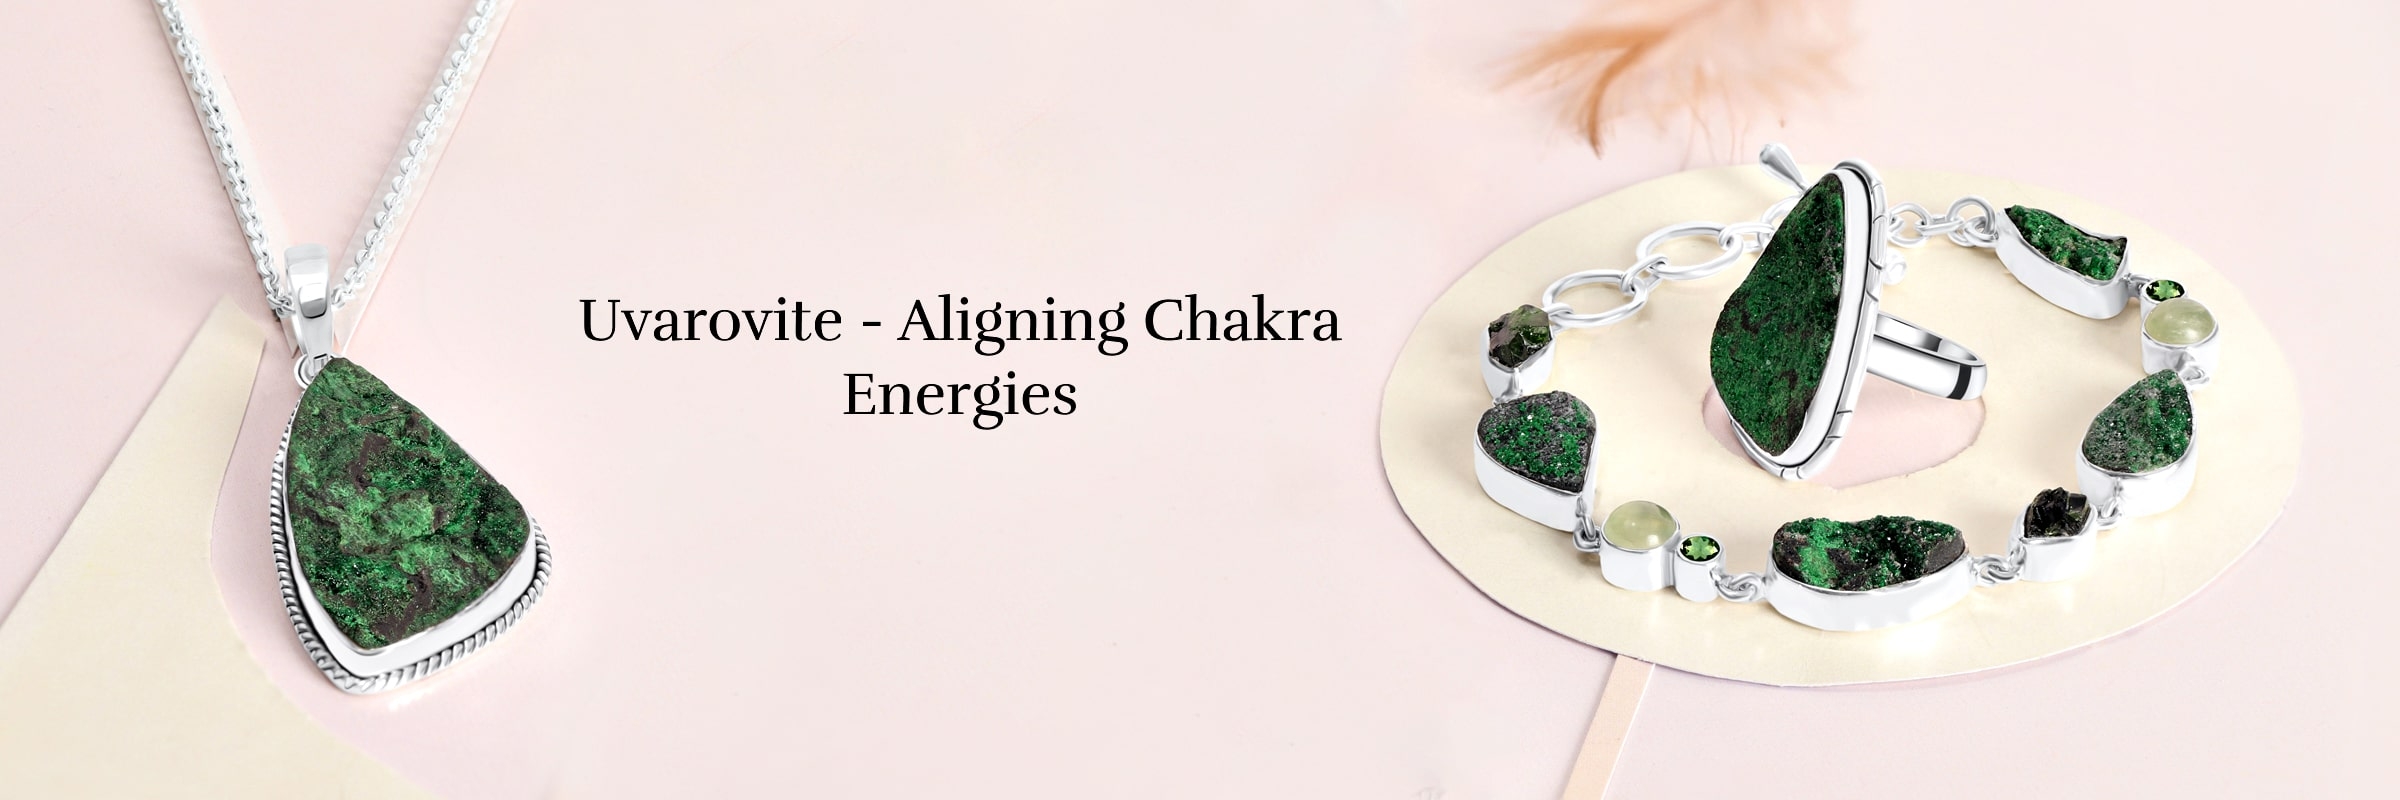 Uvarovite Chakra Healing and Balancing Energy